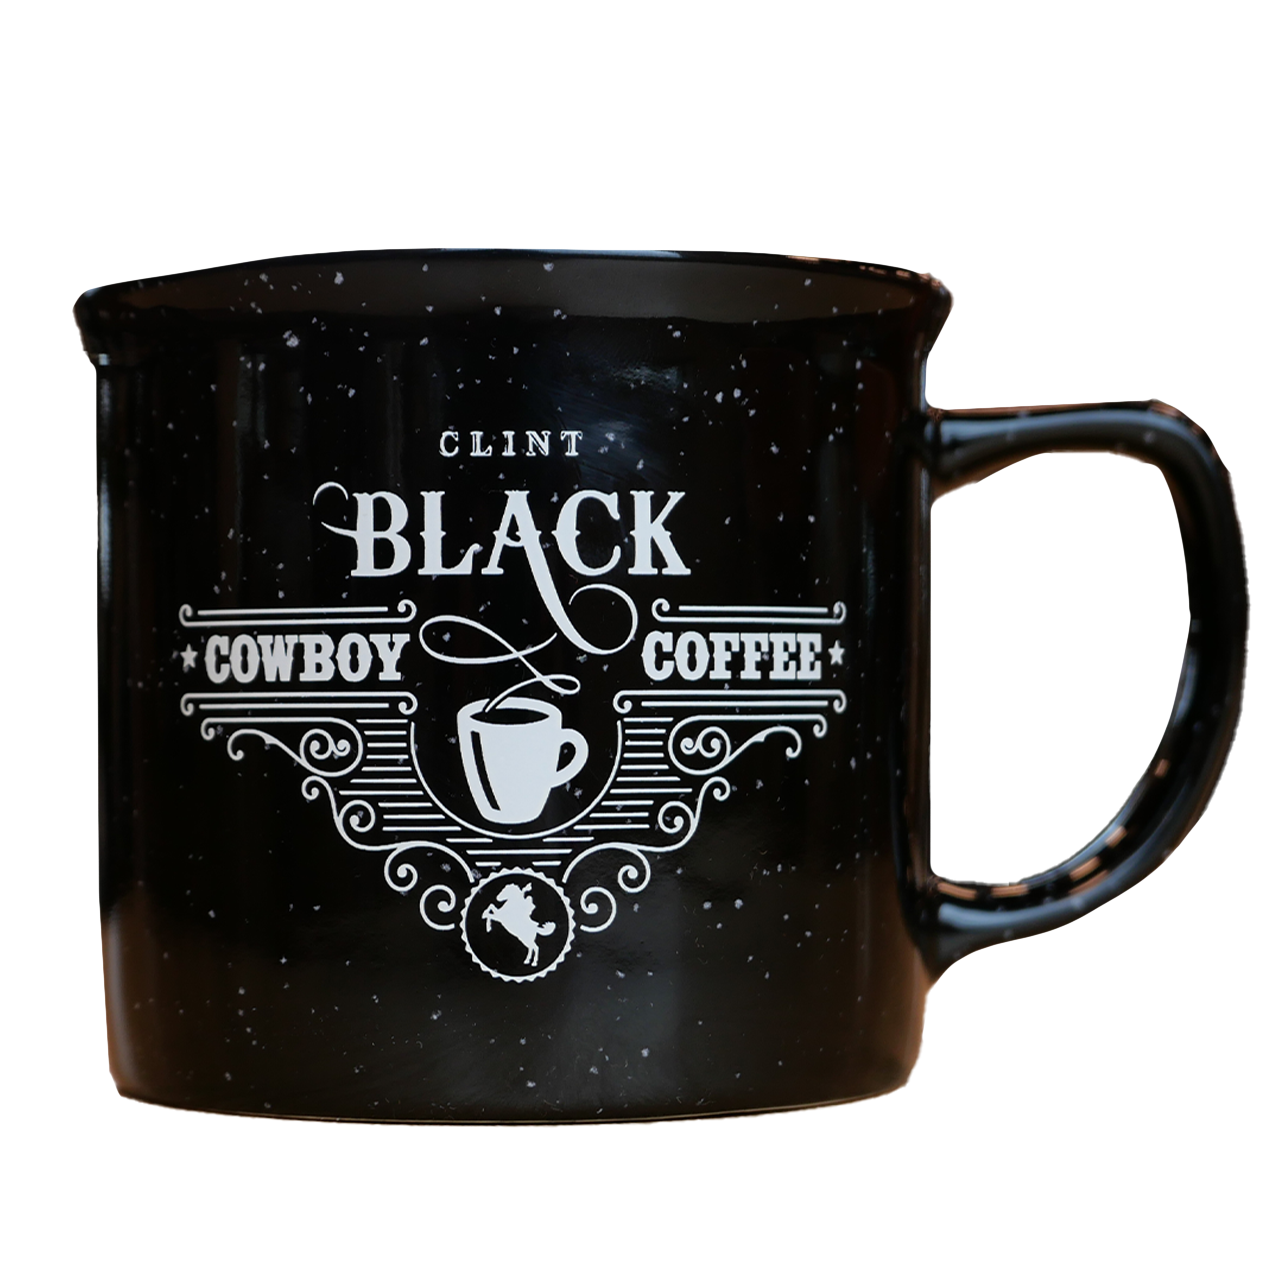 Cowboy Coffee Mug - Black